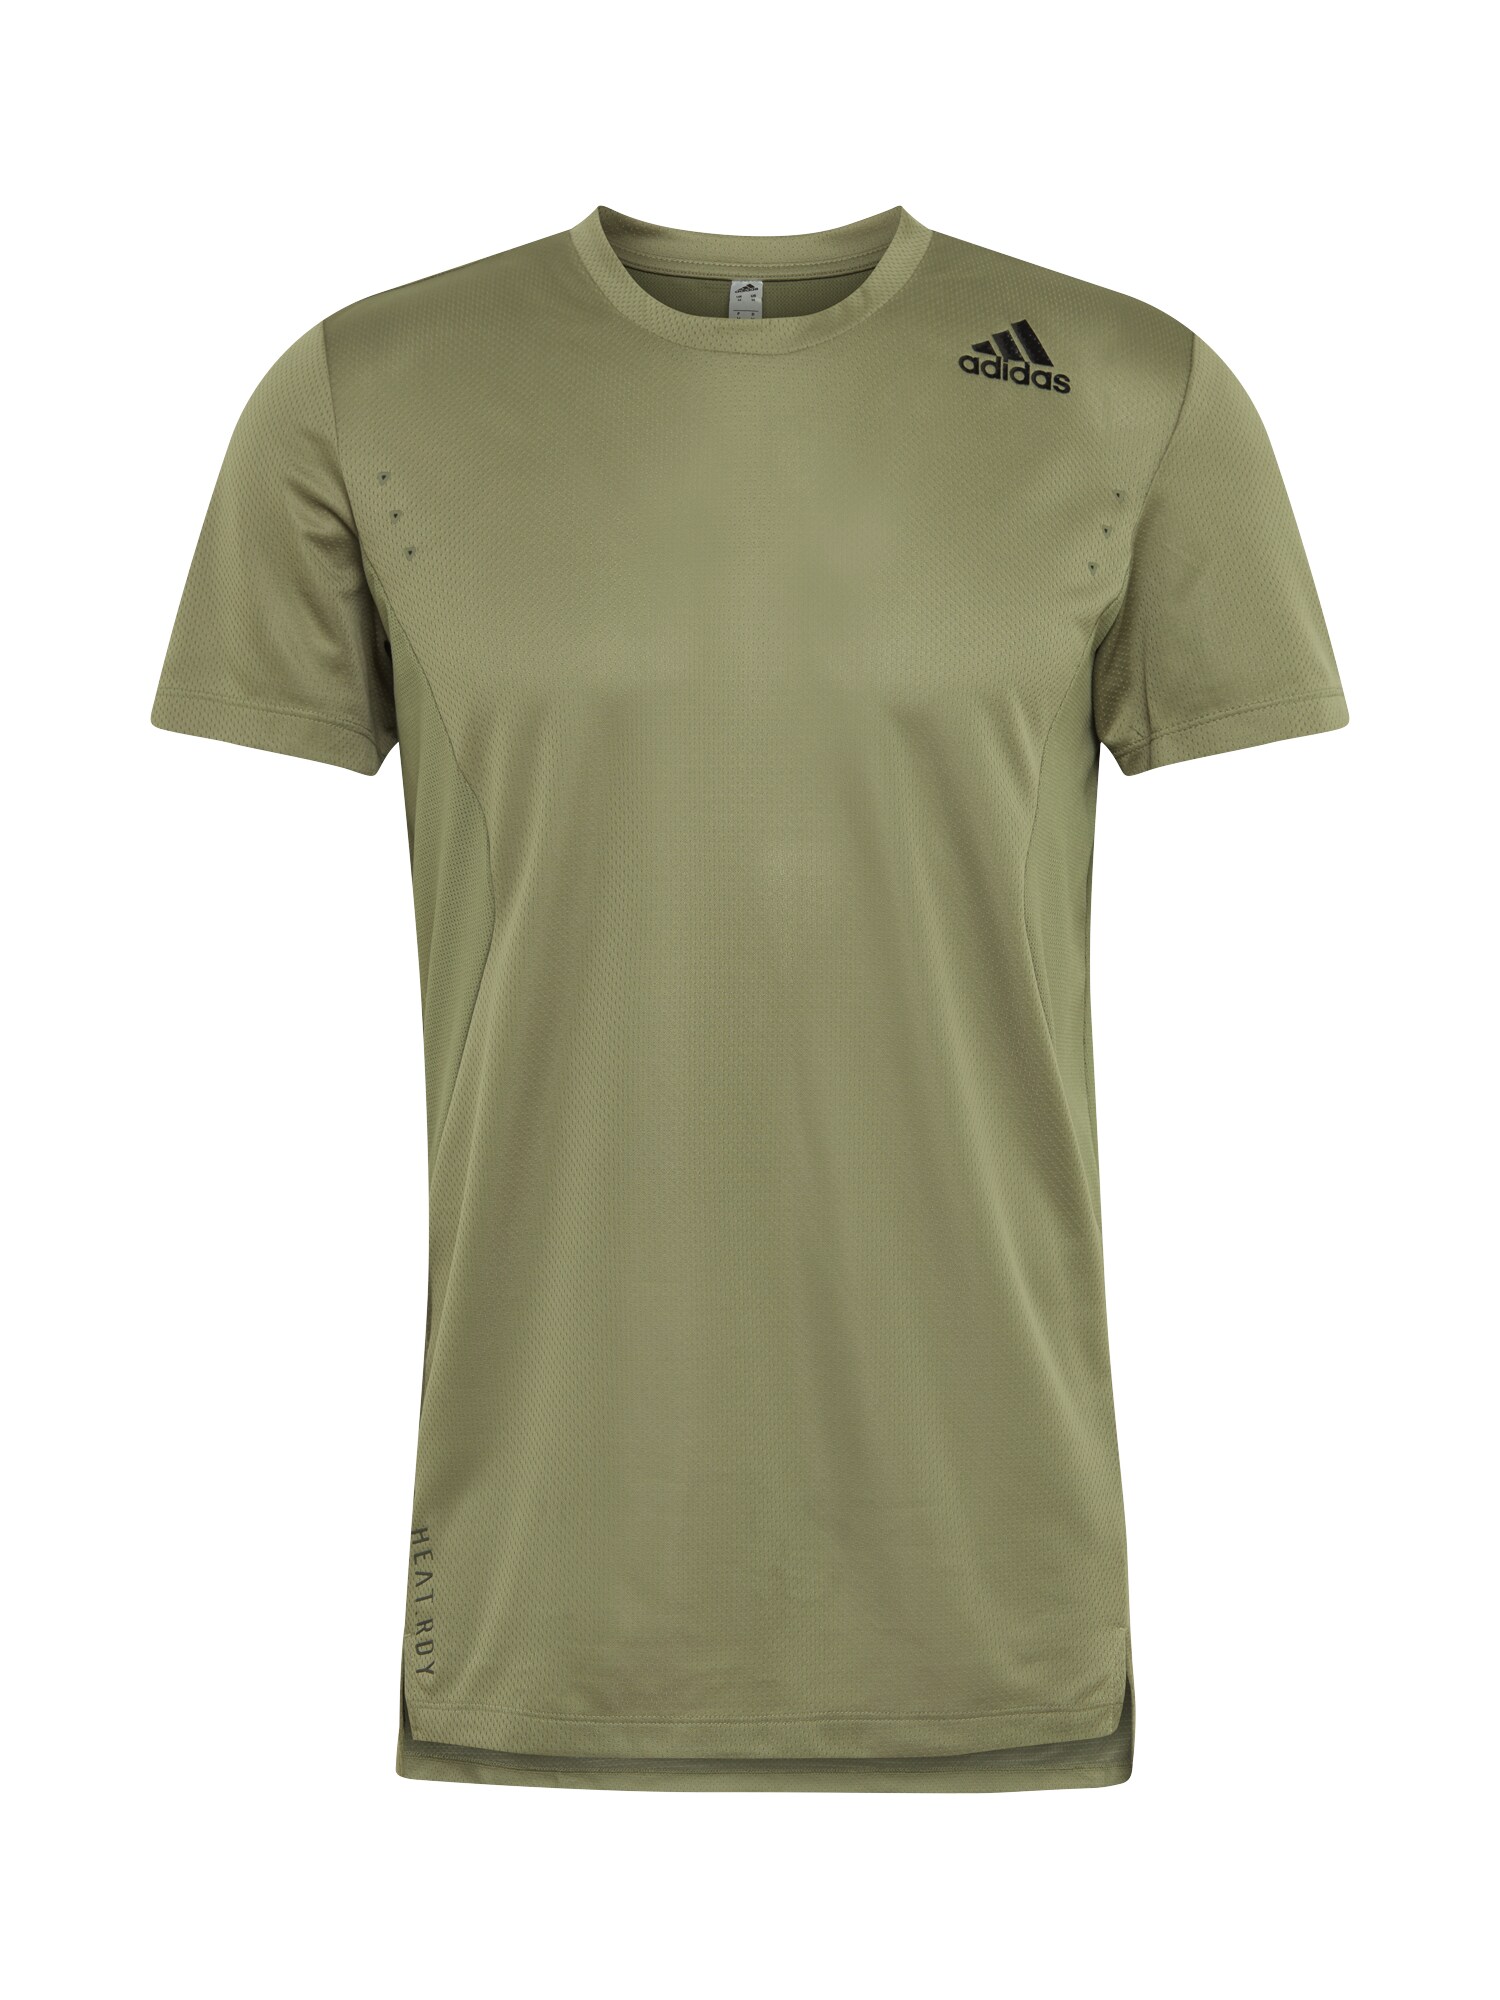 ADIDAS PERFORMANCE Sportiniai marškinėliai  rusvai žalia / alyvuogių spalva / žalia